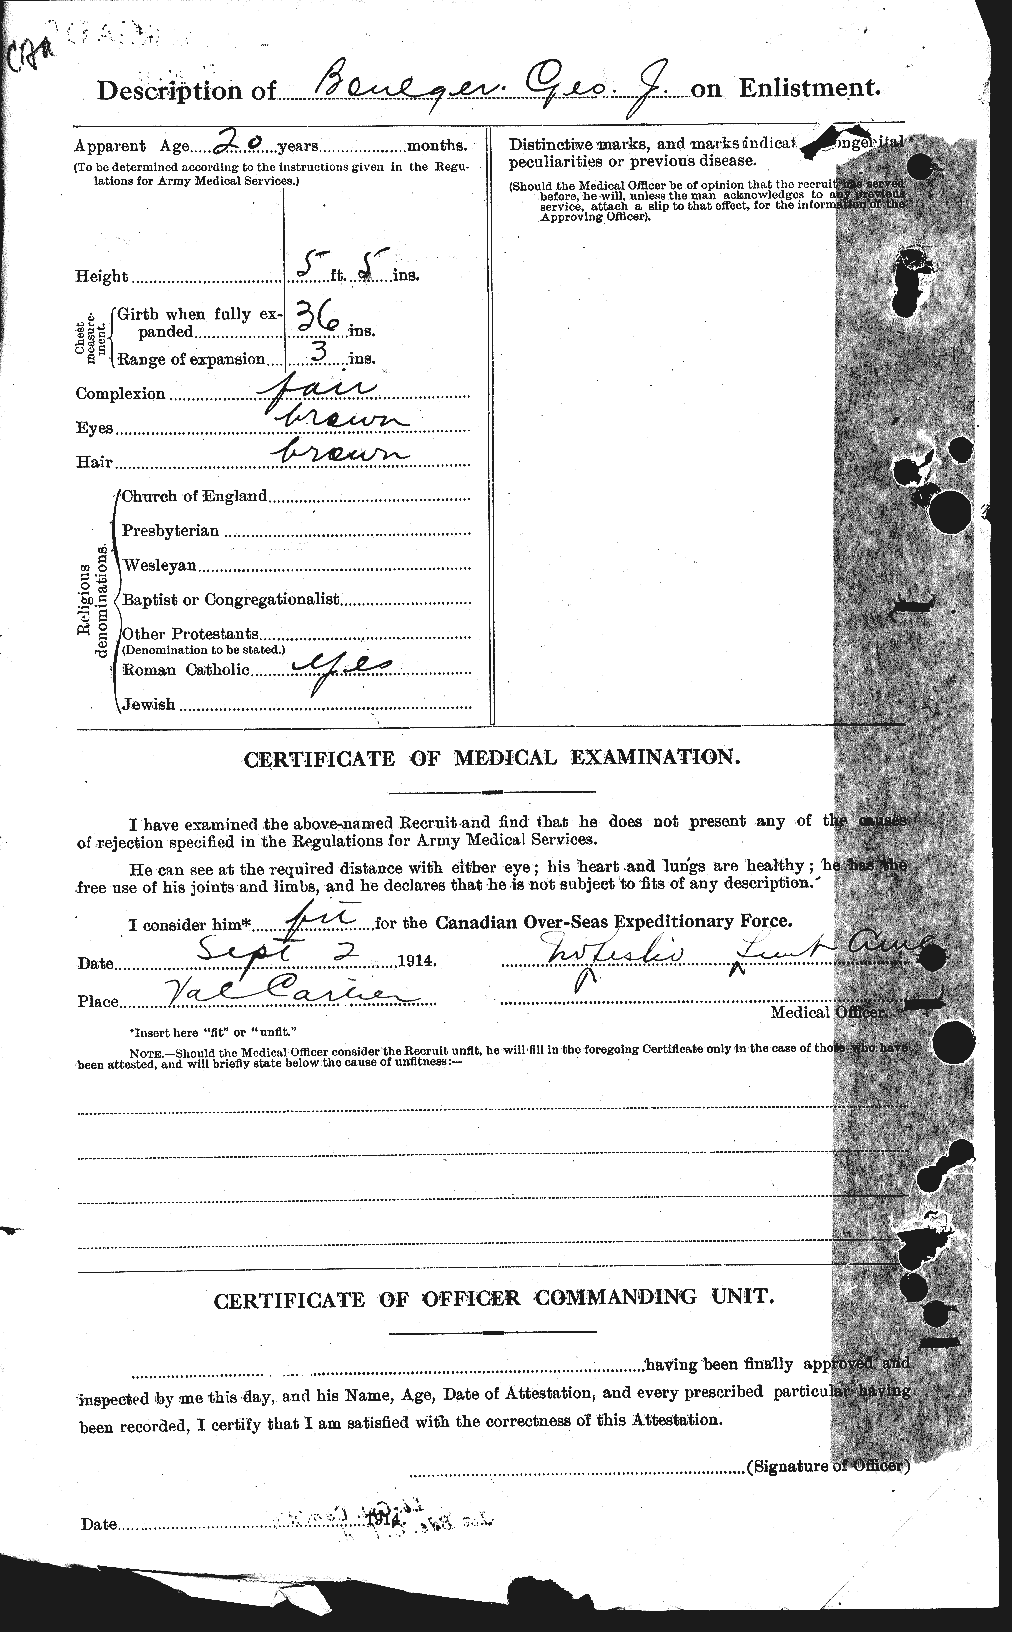 Dossiers du Personnel de la Première Guerre mondiale - CEC 252980b